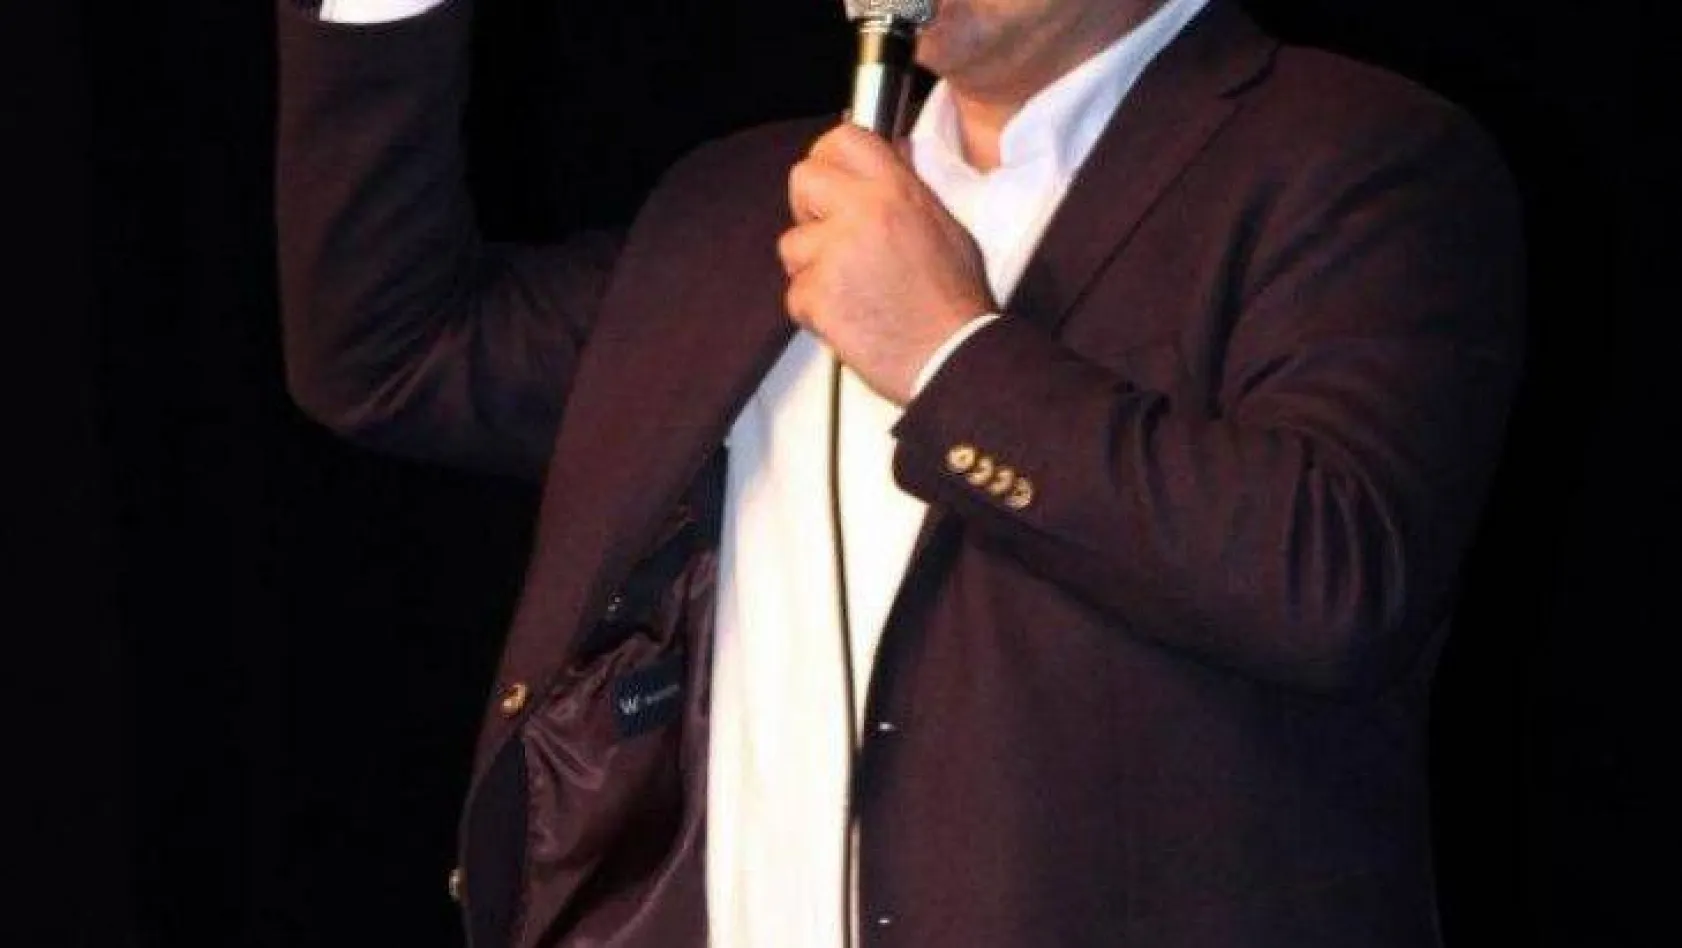 CHP İstanbul Milletvekili Aykut Erdoğdu, partisinden istifa etti.